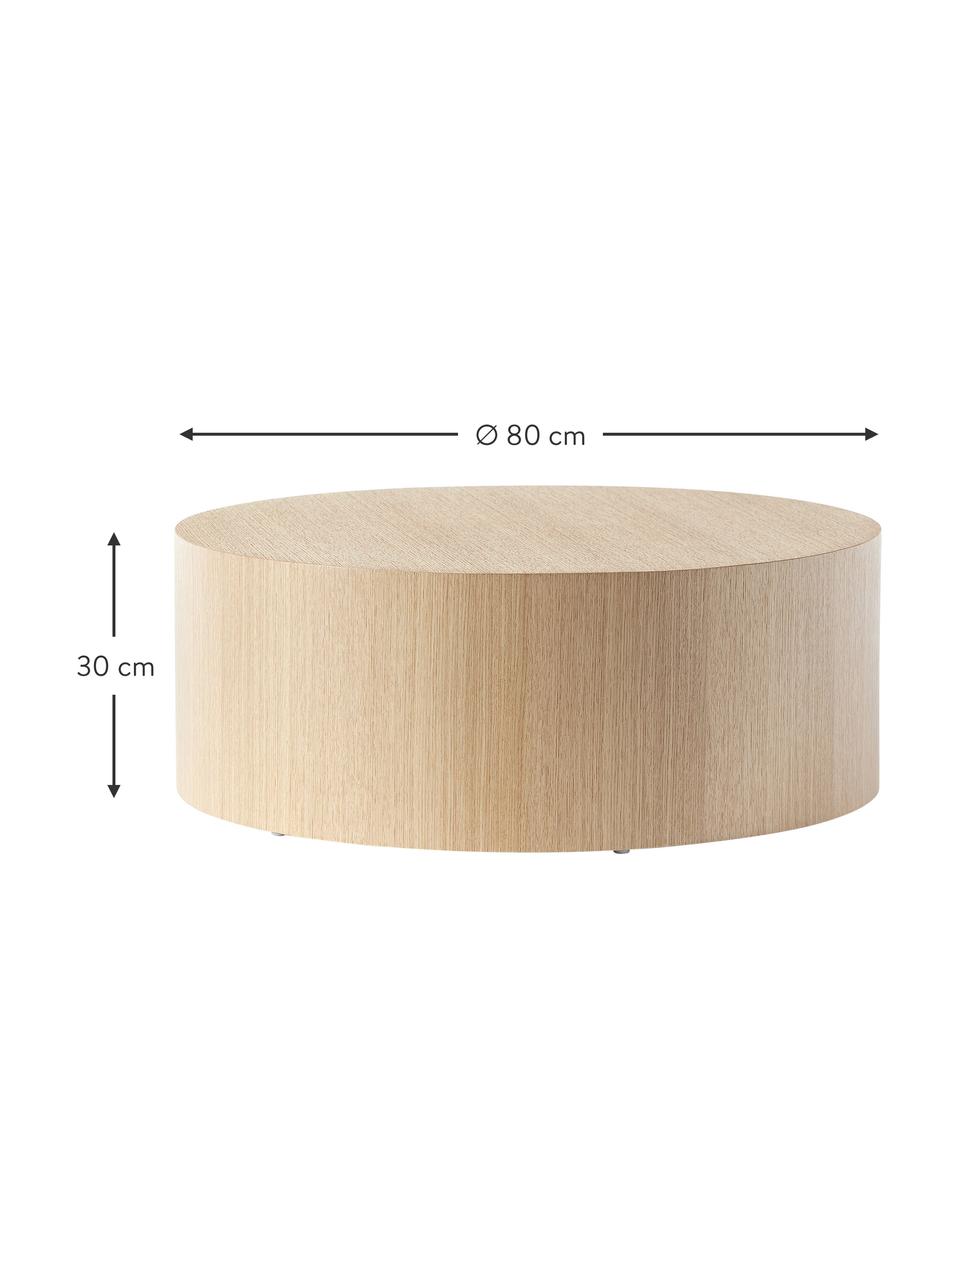 Kulatý dřevěný konferenční stolek Dan, MDF deska (dřevovláknitá deska střední hustoty) s dubovou dýhou, Světlé dřevo, Ø 80 cm, V 30 cm